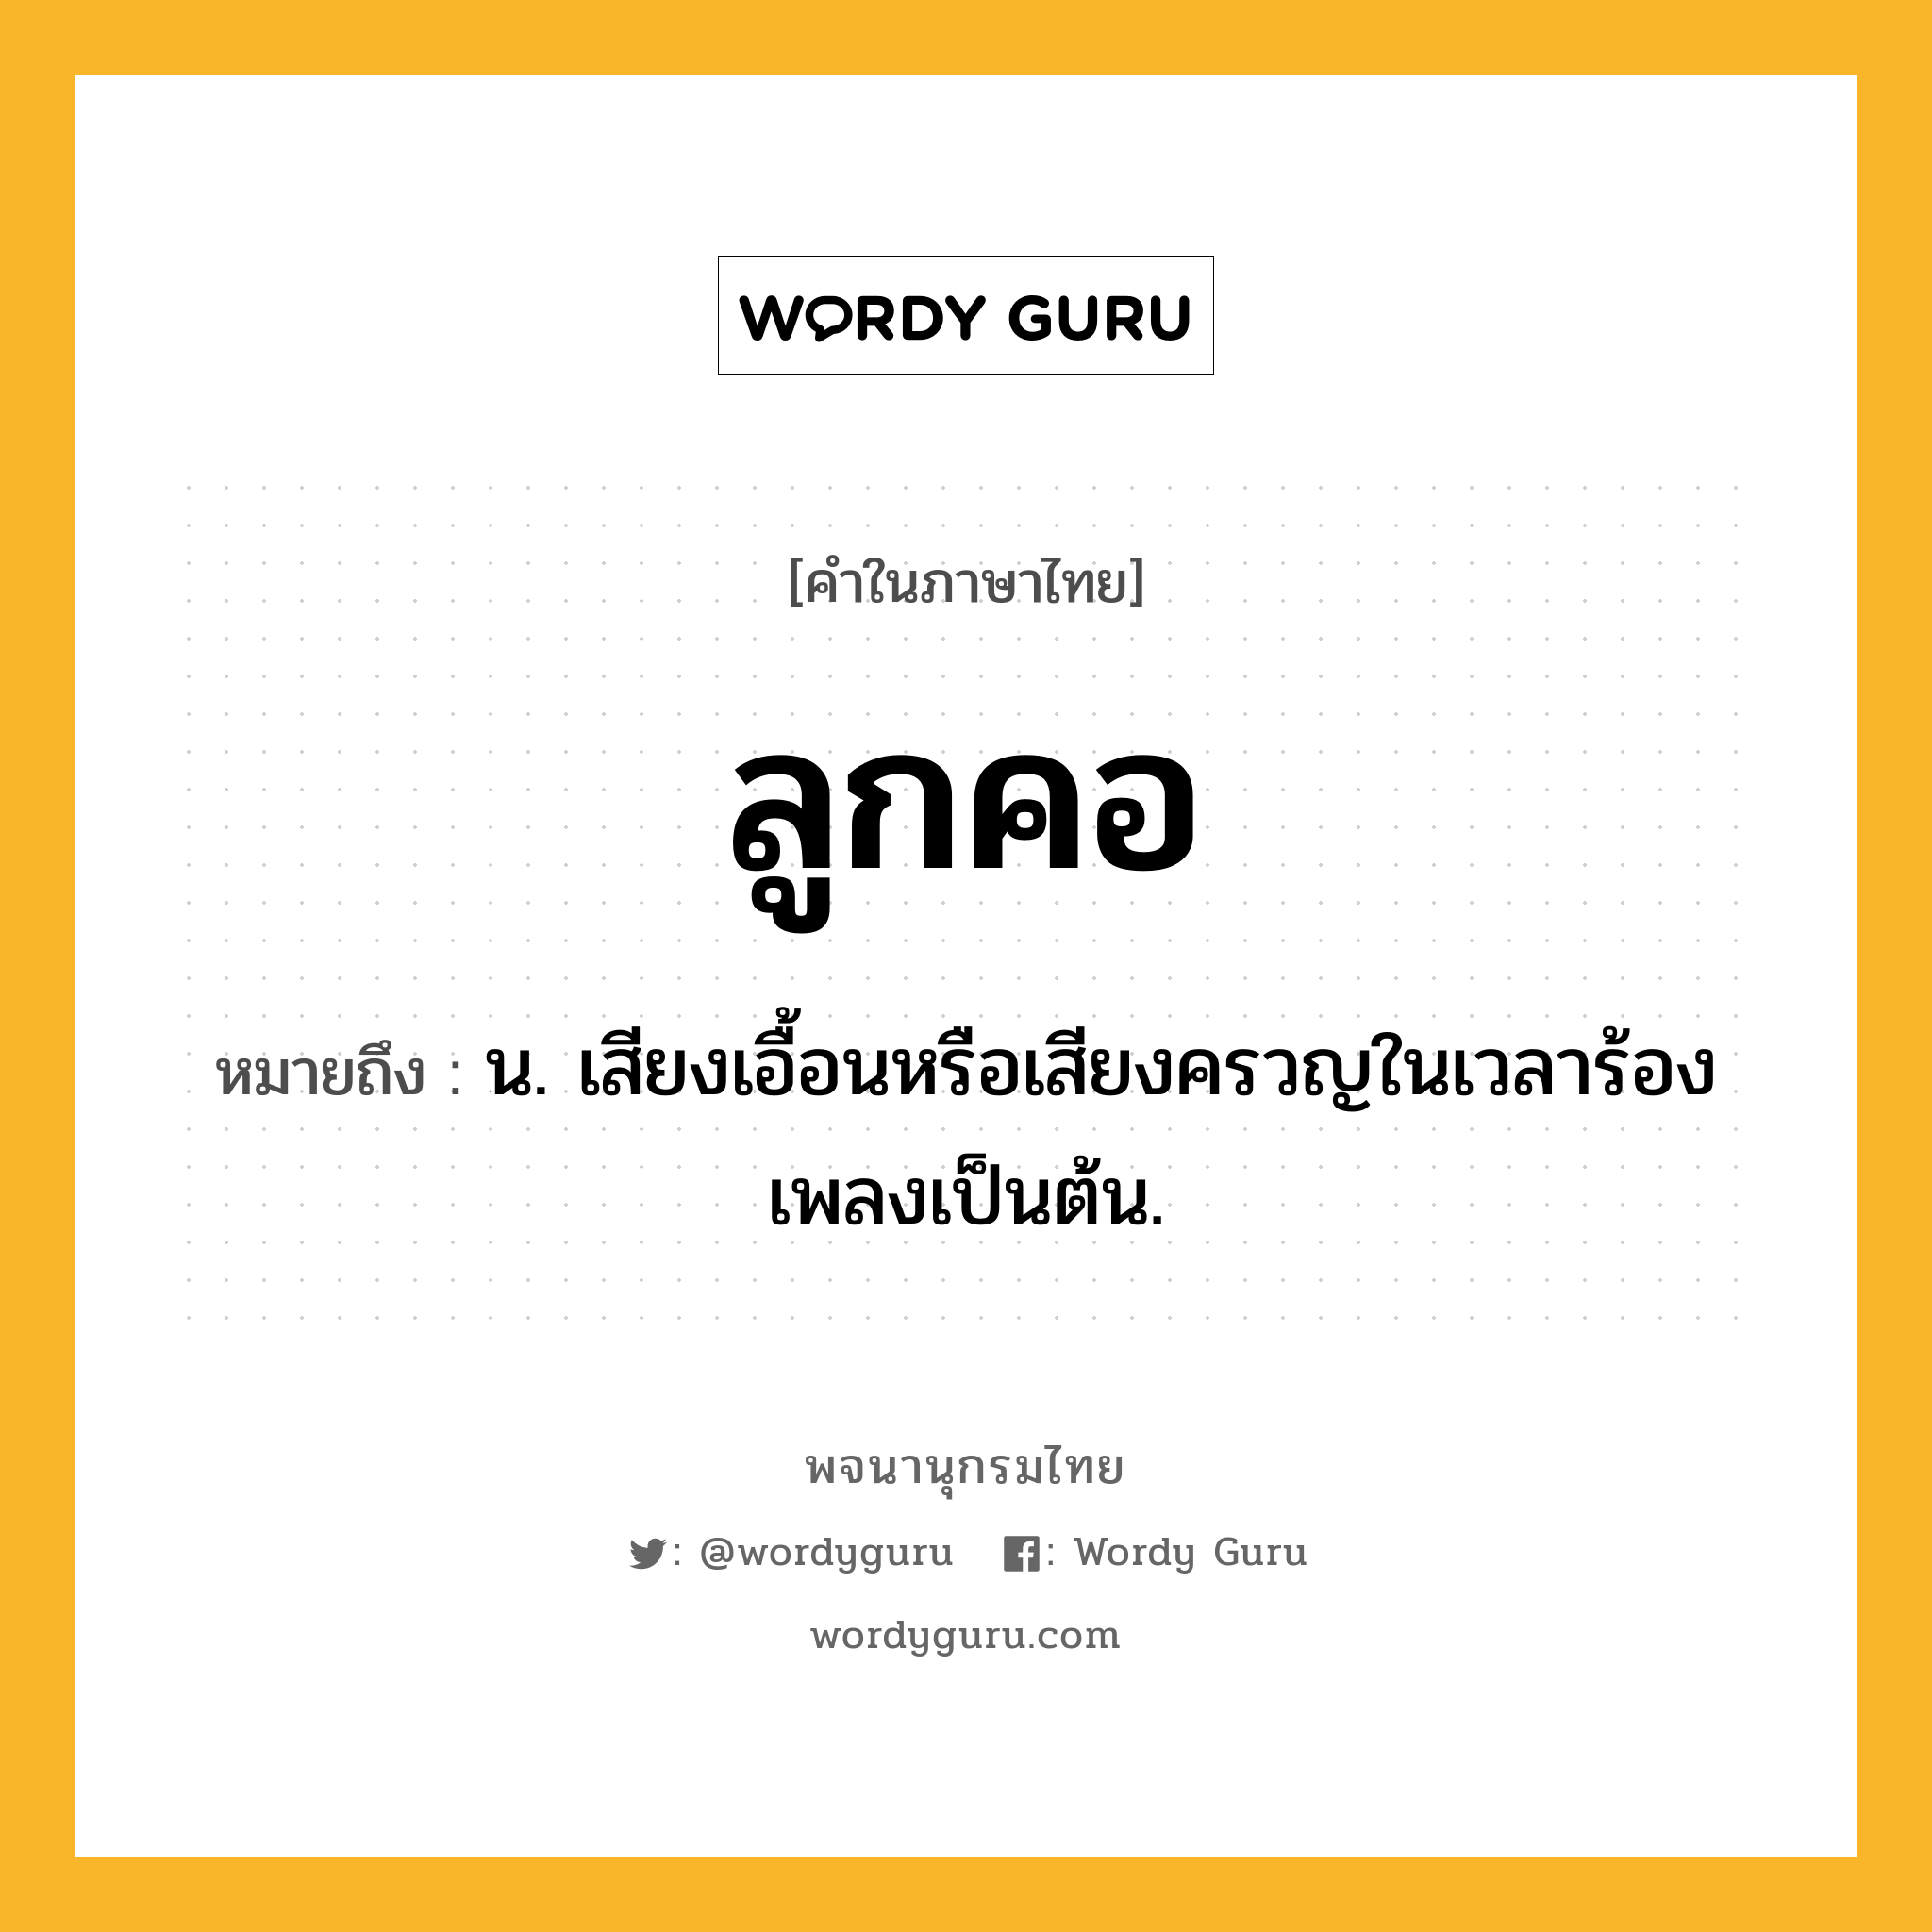 ลูกคอ ความหมาย หมายถึงอะไร?, คำในภาษาไทย ลูกคอ หมายถึง น. เสียงเอื้อนหรือเสียงครวญในเวลาร้องเพลงเป็นต้น.